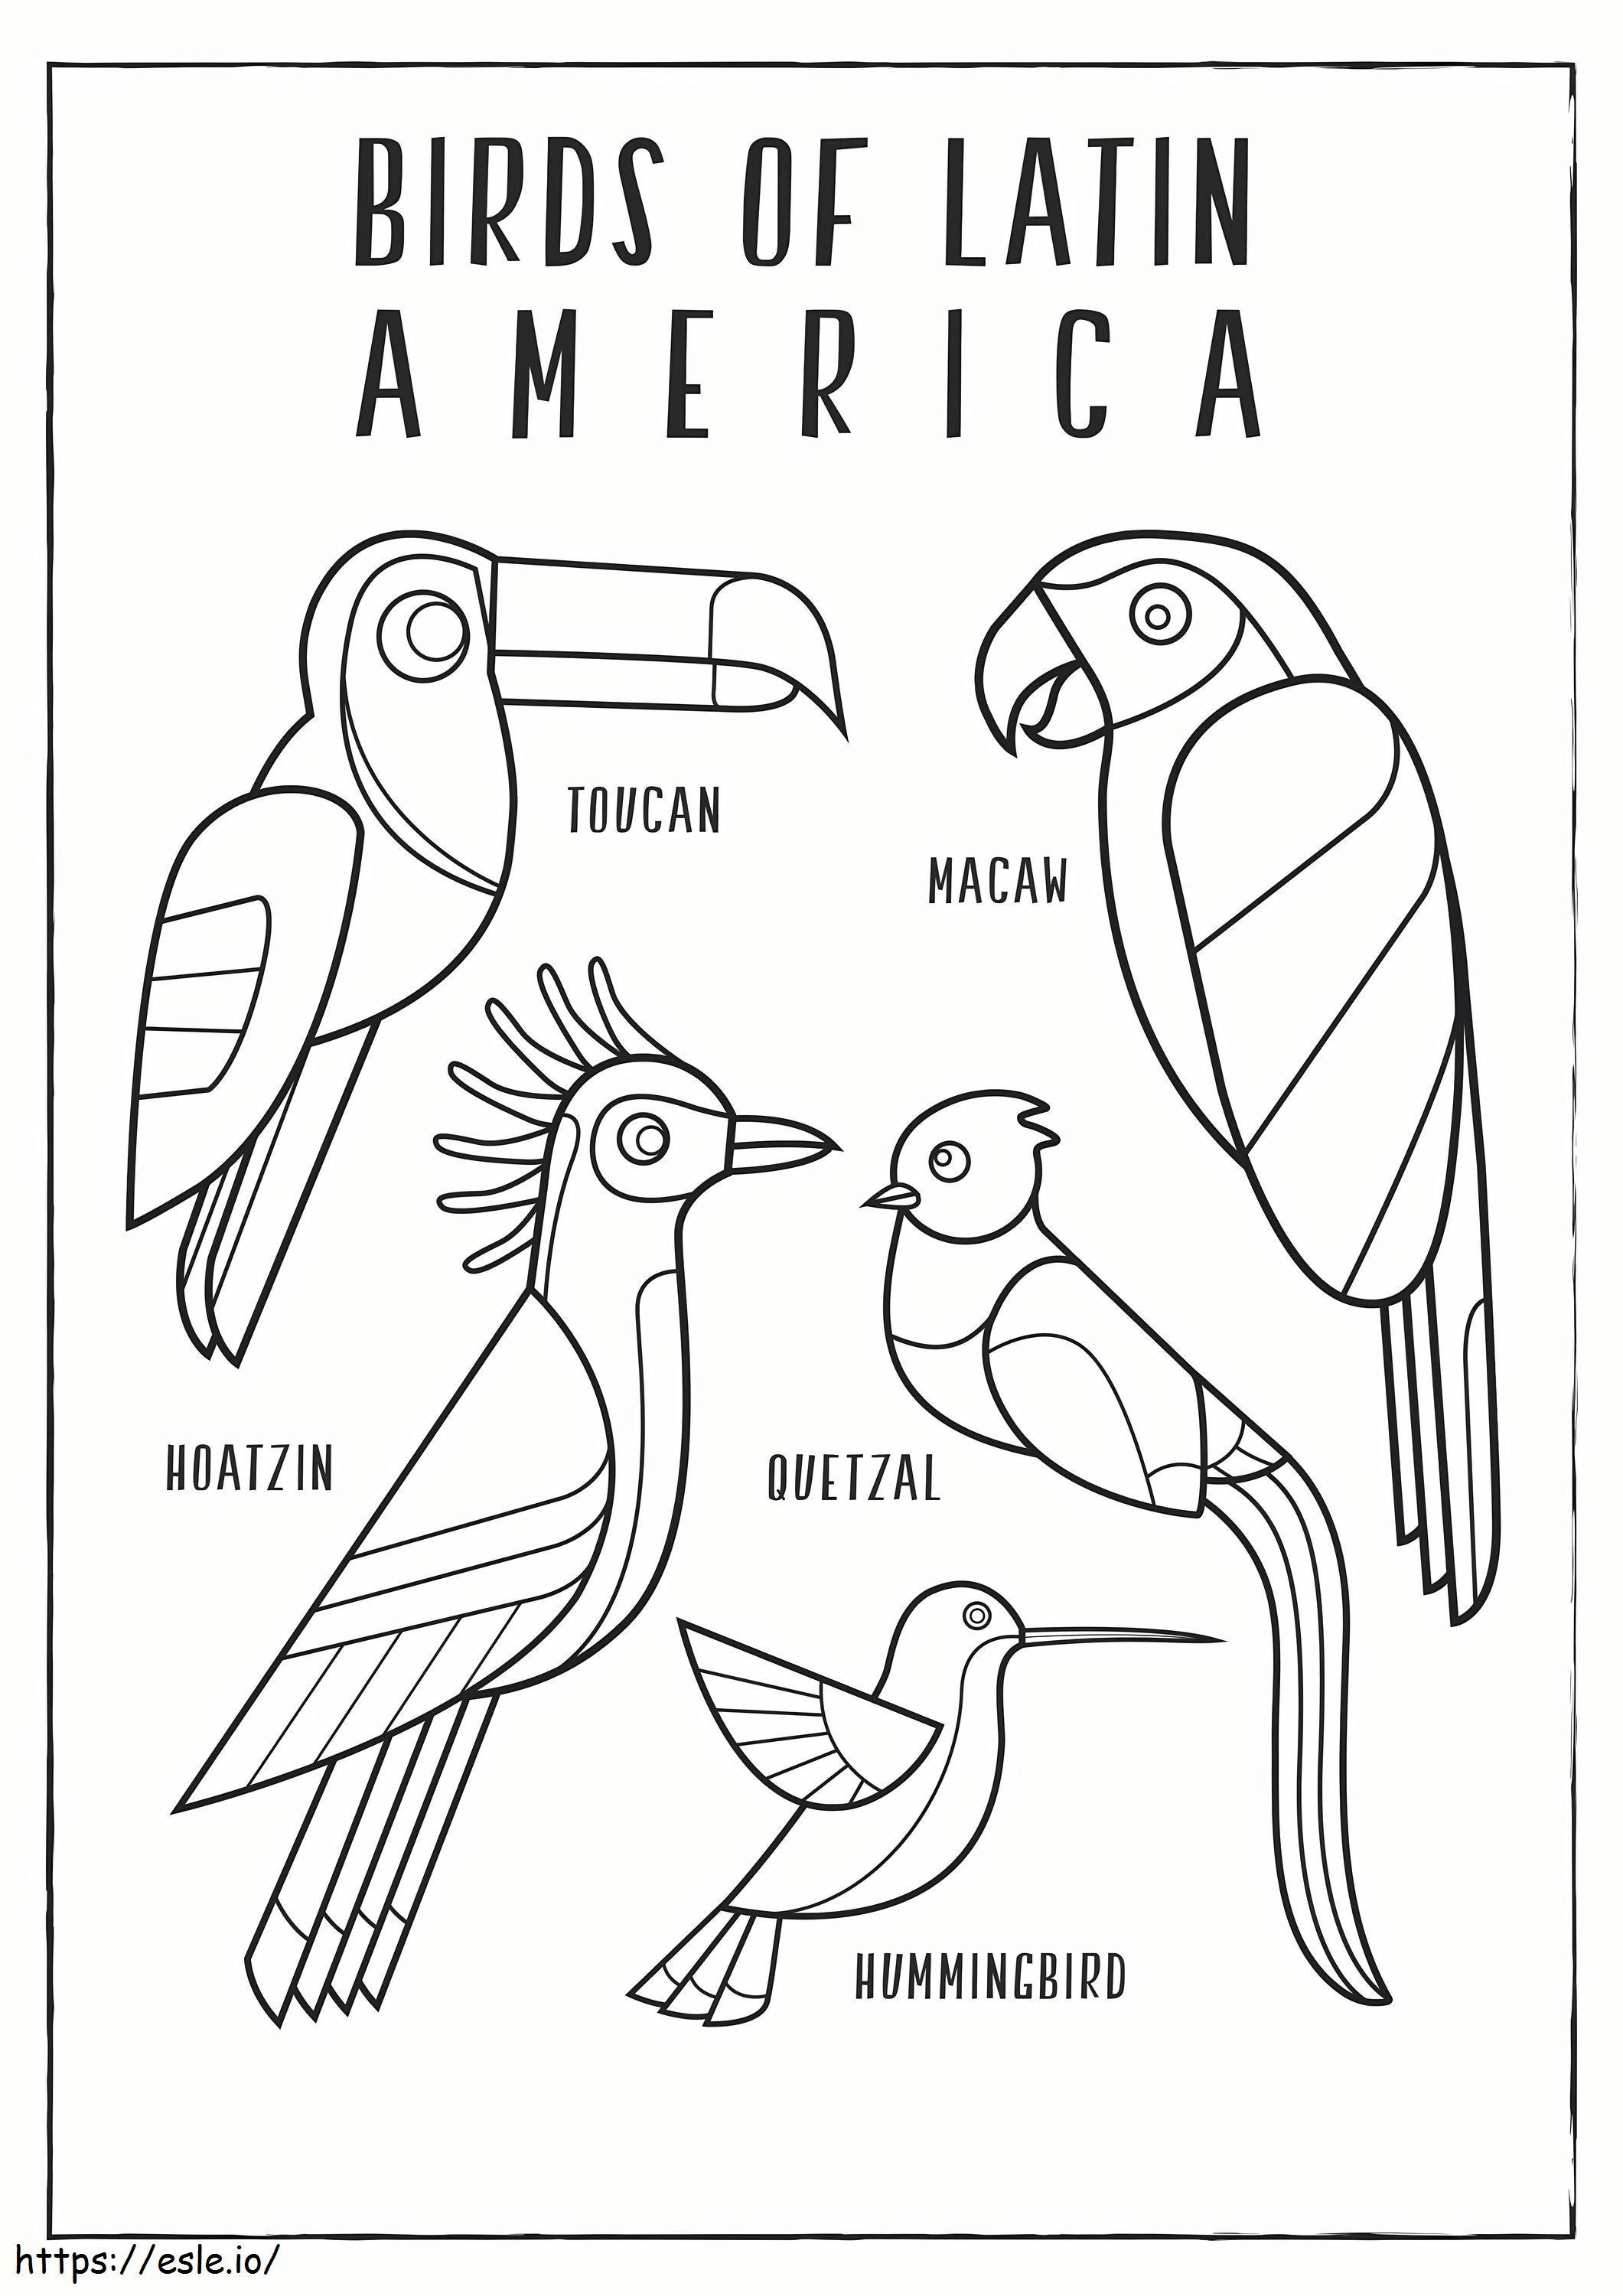 Aves escamadas da América Latina para colorir